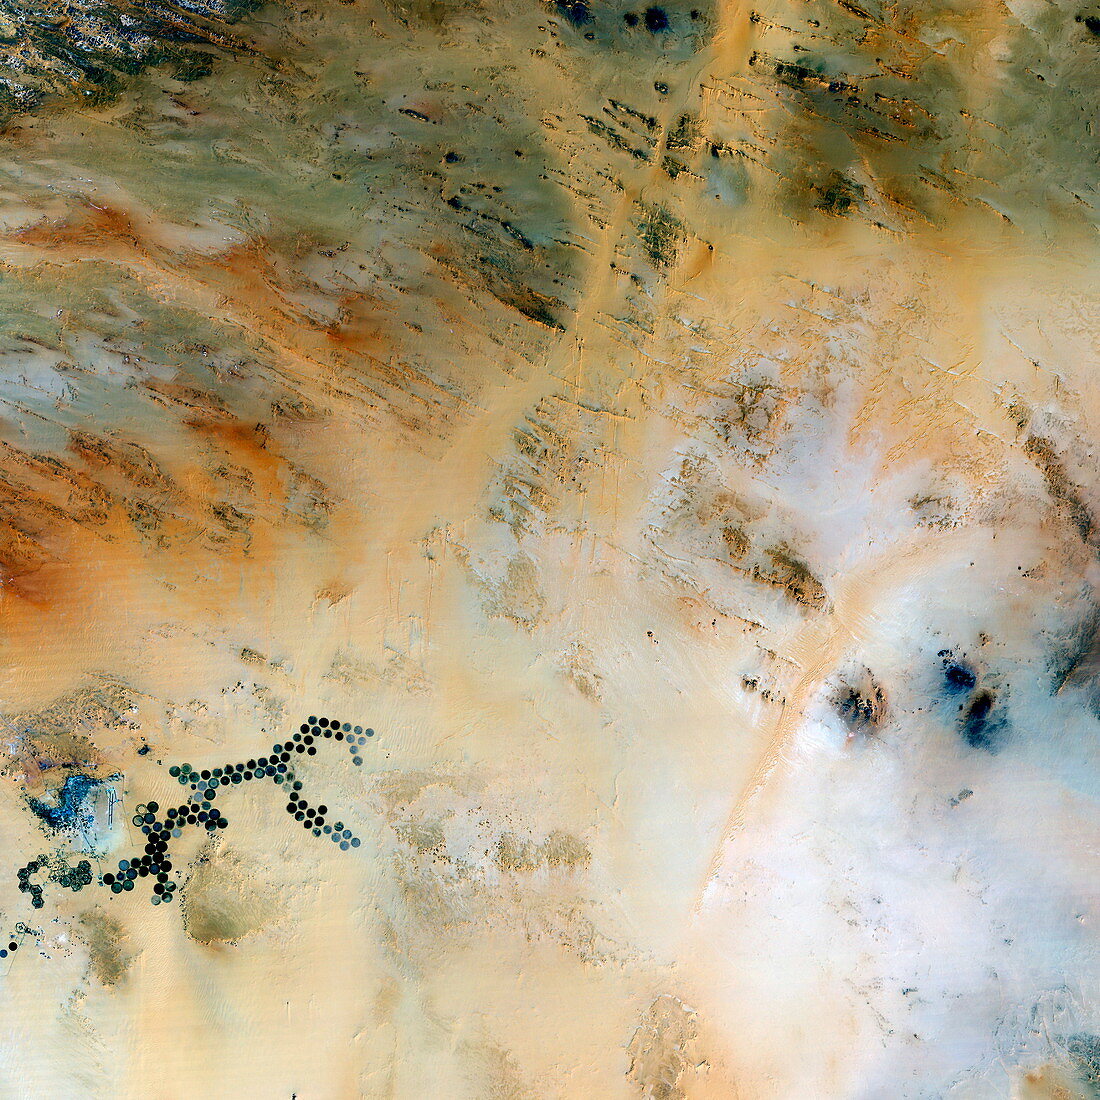 Kufra Oasis in Libya